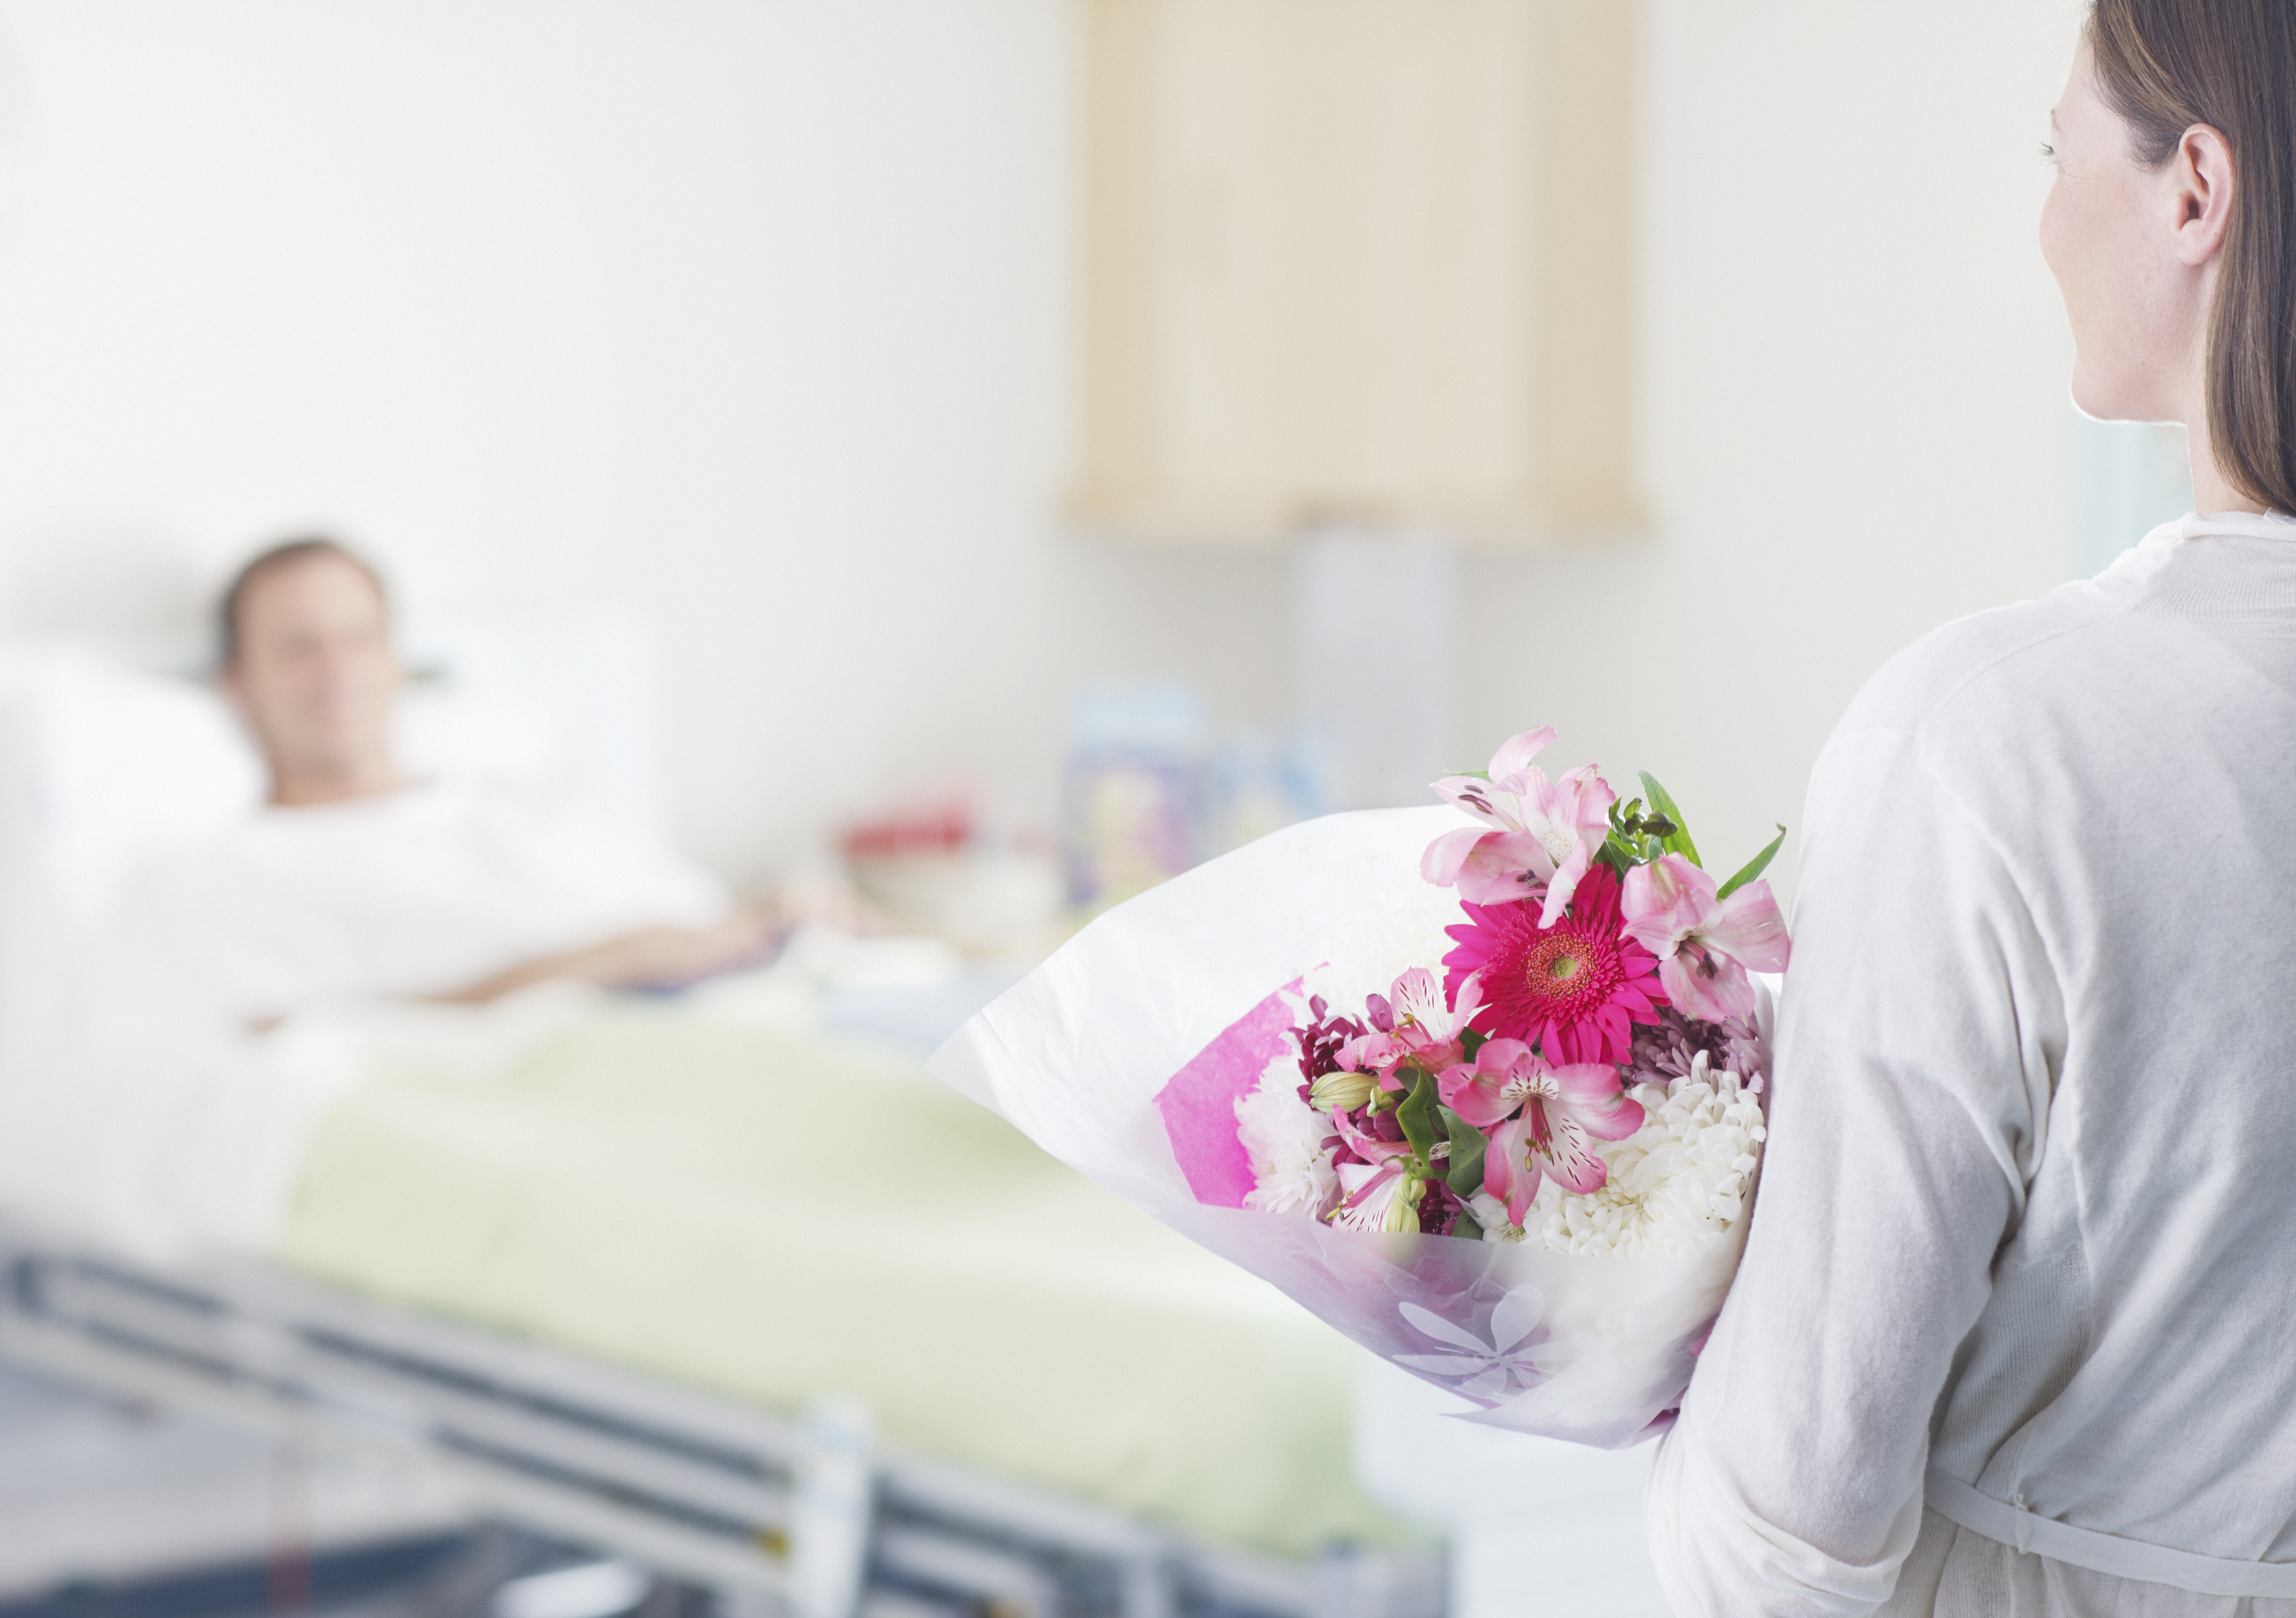 Une femme apportant des fleurs à un homme dans un hôpital | Source : Getty Images